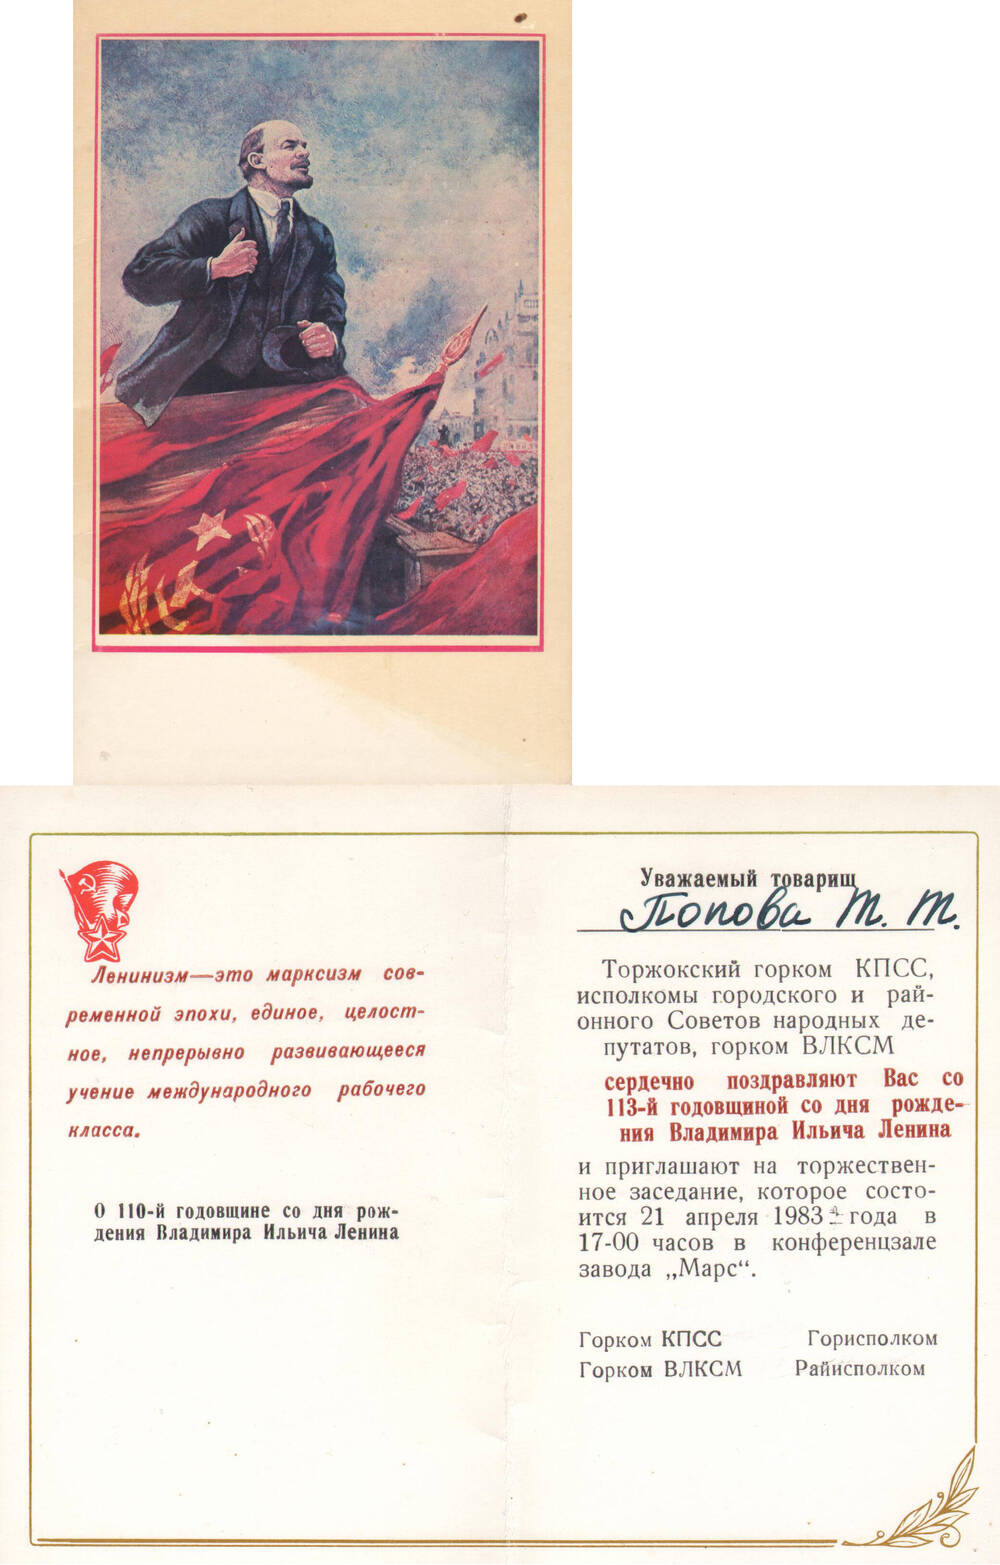 Приглашение на имя Поповой Т.Т. на торжественное заседание, посвященное 113-й годовщине со дня рождения В.И. Ленина